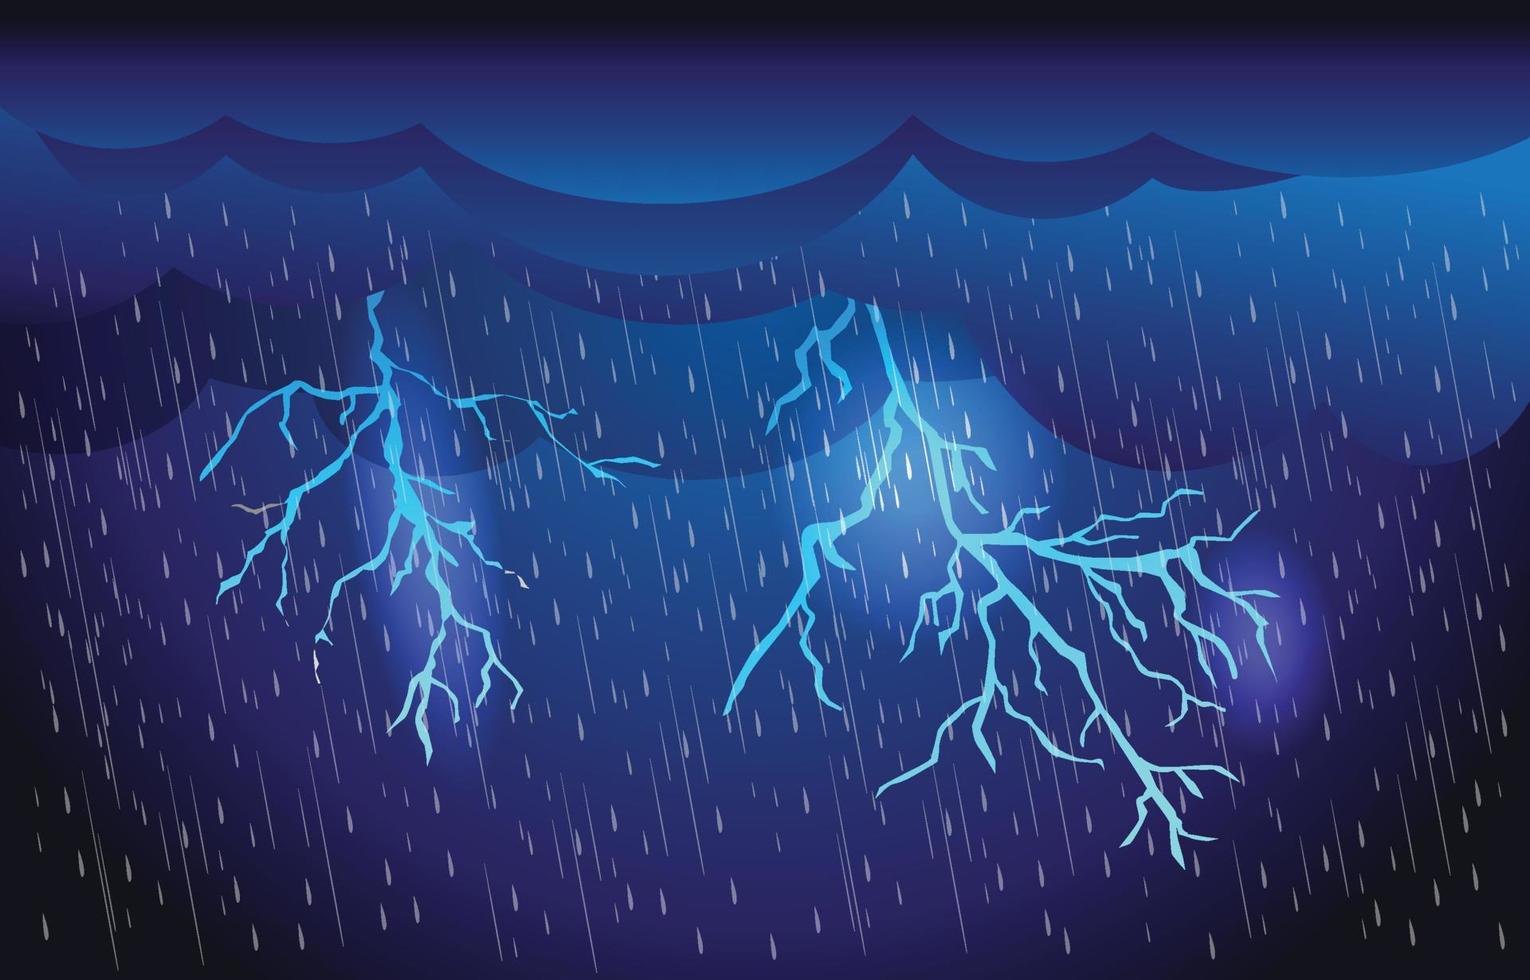 fuertes lluvias en el cielo oscuro, relámpagos y nubes, temporada de lluvias, tormentas eléctricas, desastres naturales de inundación, antecedentes de la naturaleza del clima, ilustración vectorial. vector